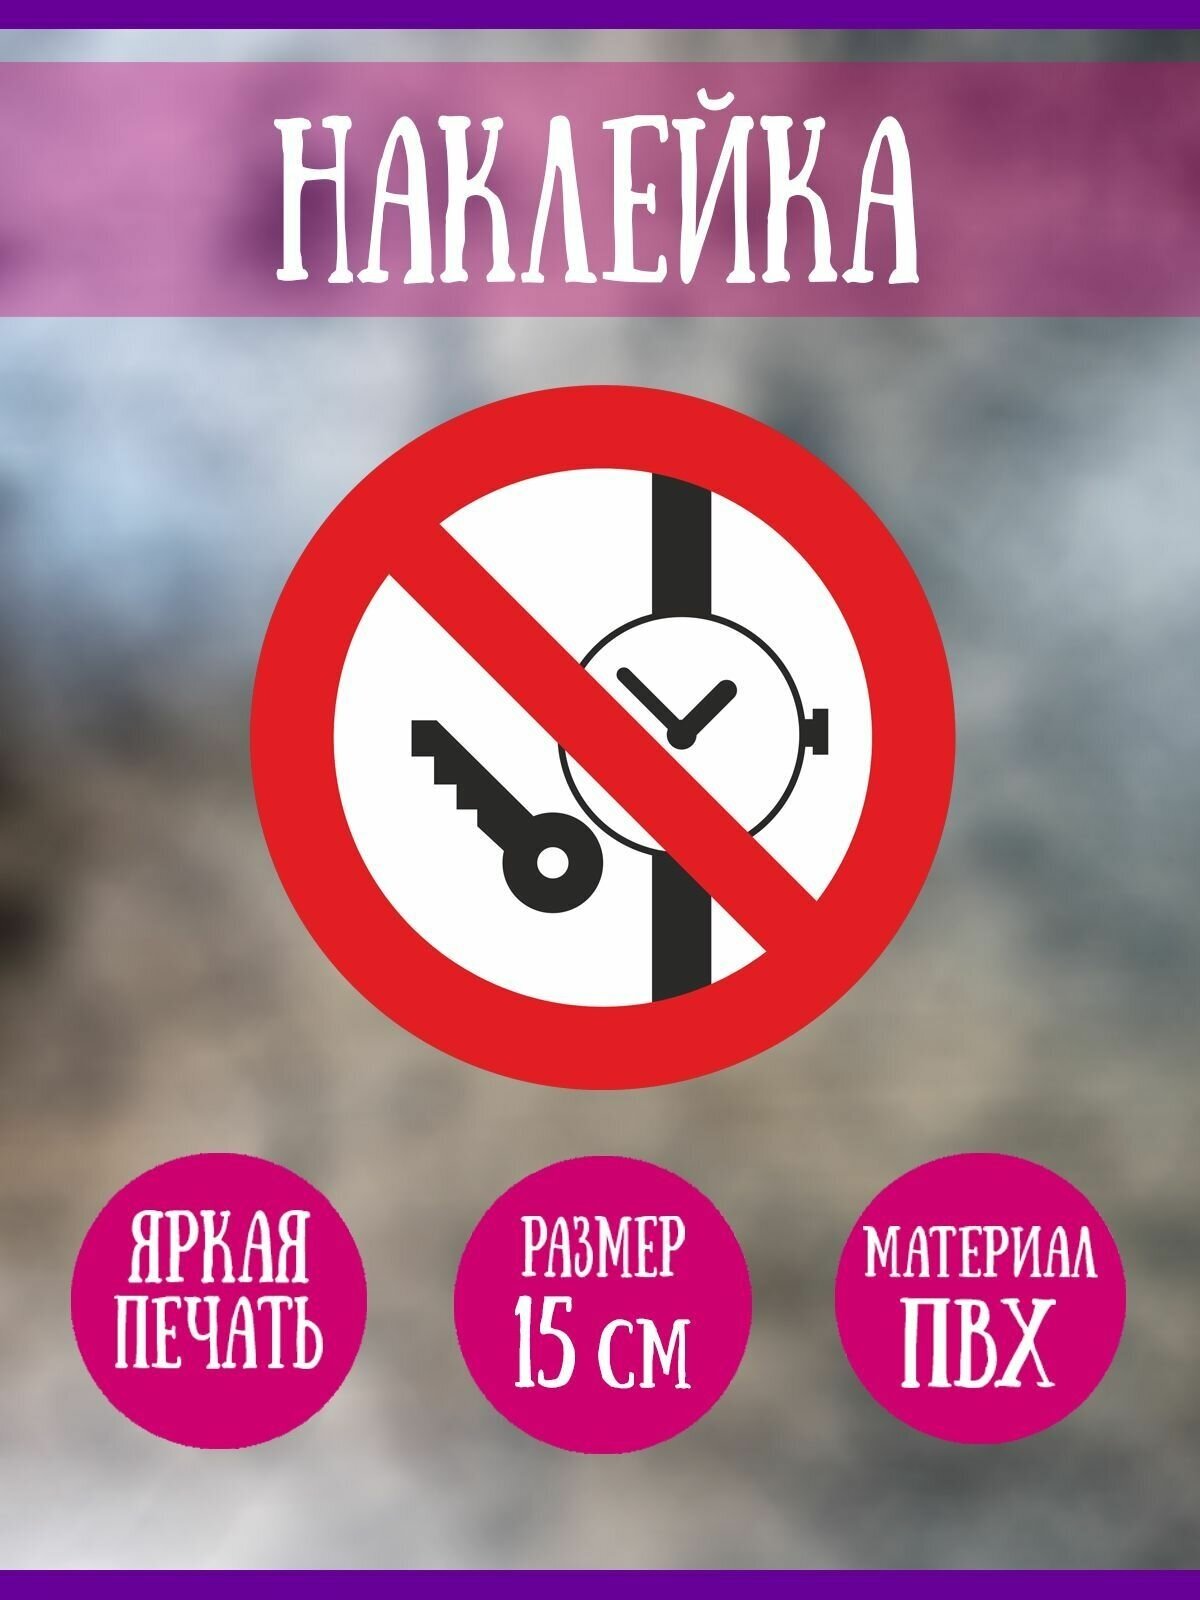 Наклейка RiForm "Запрещается иметь при (на) себе металлические предметы (часы и т. п.)", 15 см